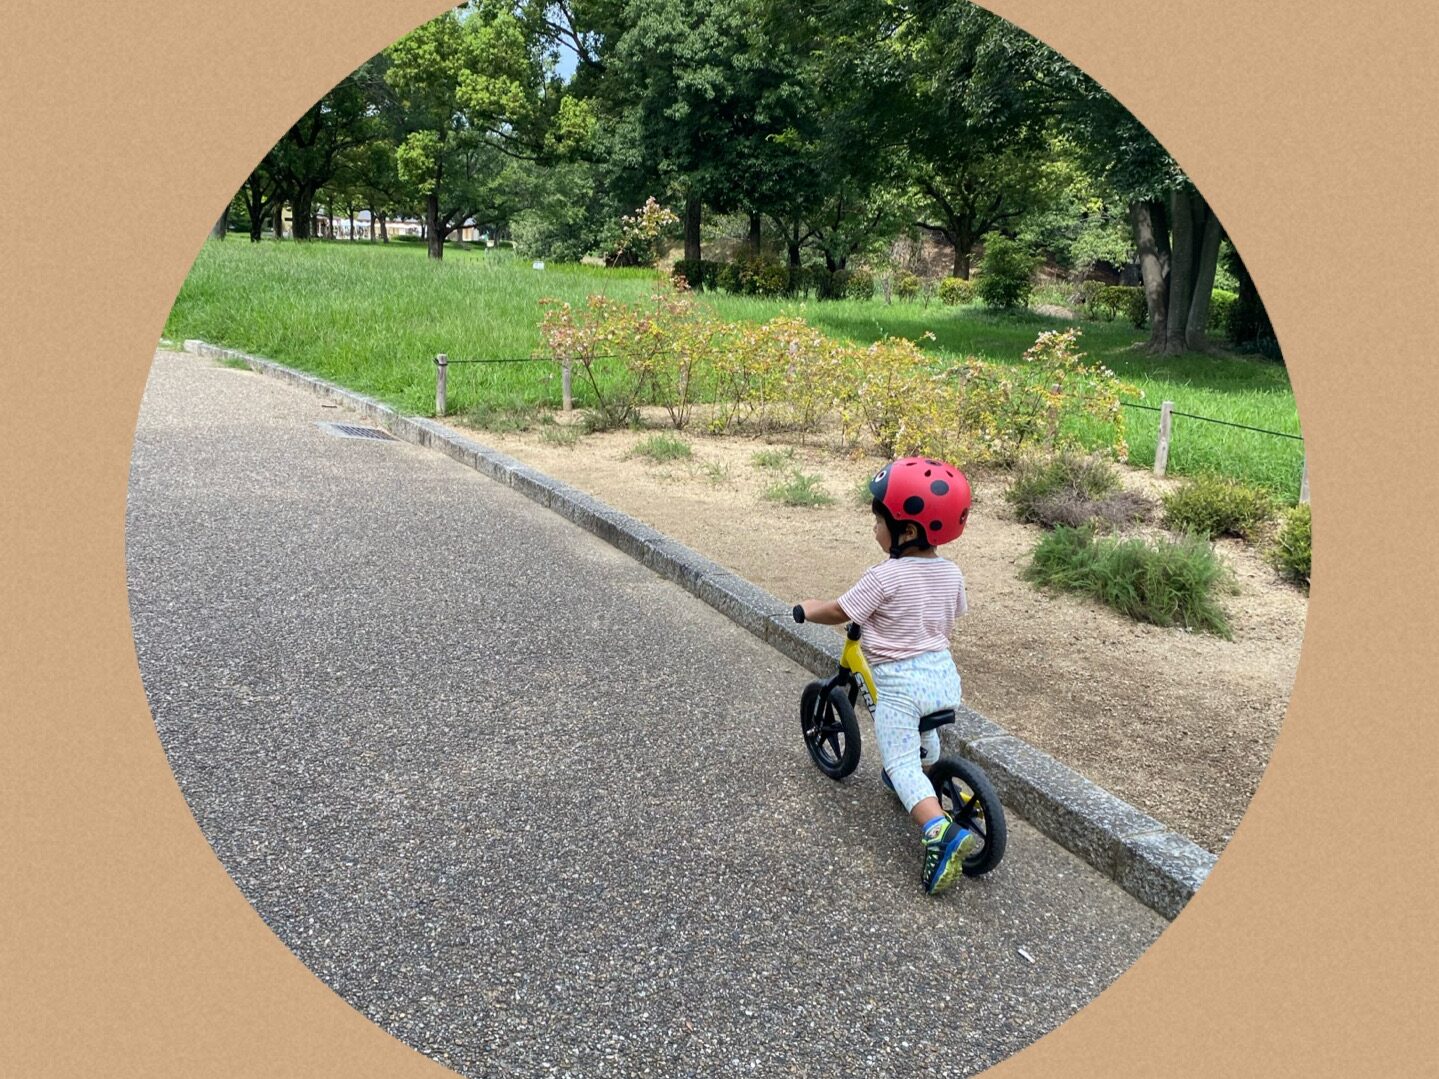 1歳半の男の子が黄色のスポーツモデルのストライダーを公園で乗っている。
季節は夏。
服は半袖の白に赤色のボーダー。
ズボンは白色に水色の雫模様。
てんとう虫のヘルメットを装着。
ストライダー乗り始め３ヶ月の頃。
